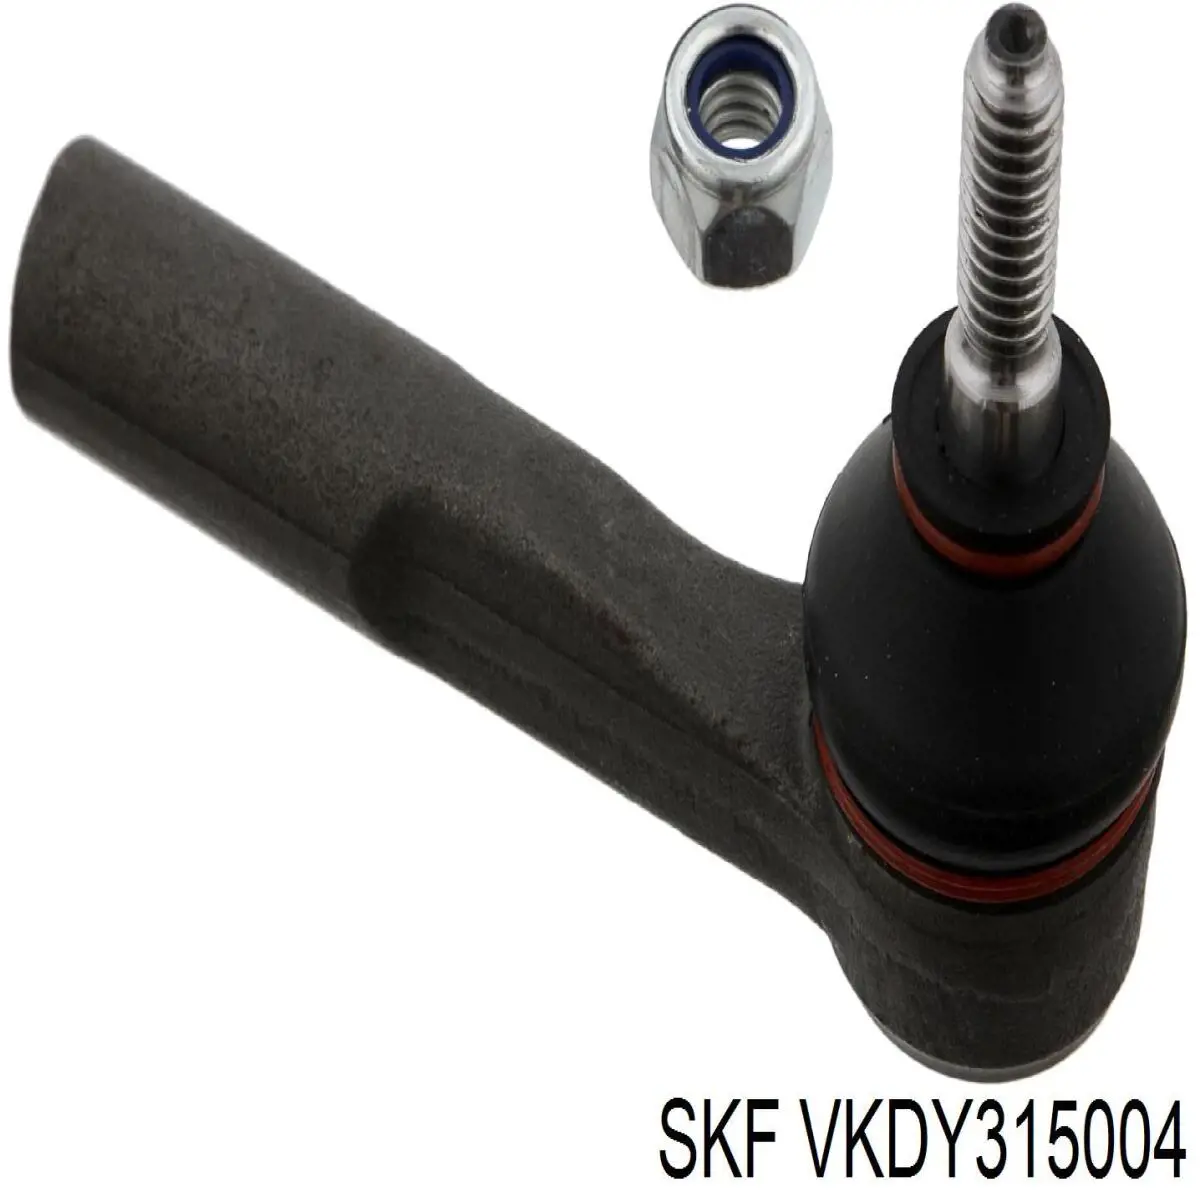 VKDY 315004 SKF rótula barra de acoplamiento exterior